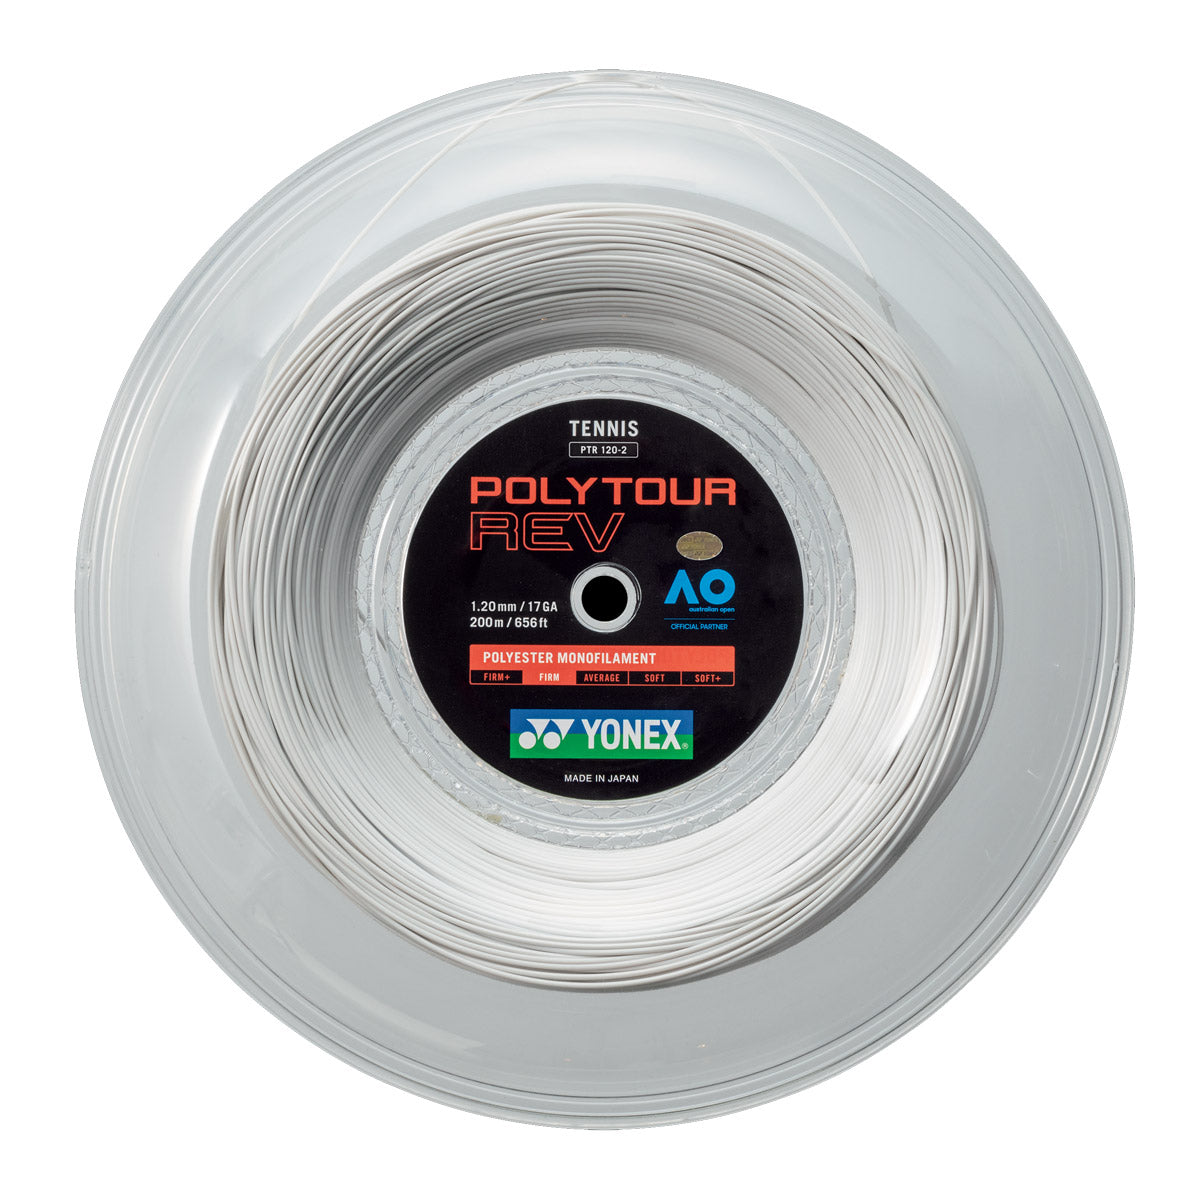 Yonex Polytour Rev 1.20mm 200m Reel Tennis String White